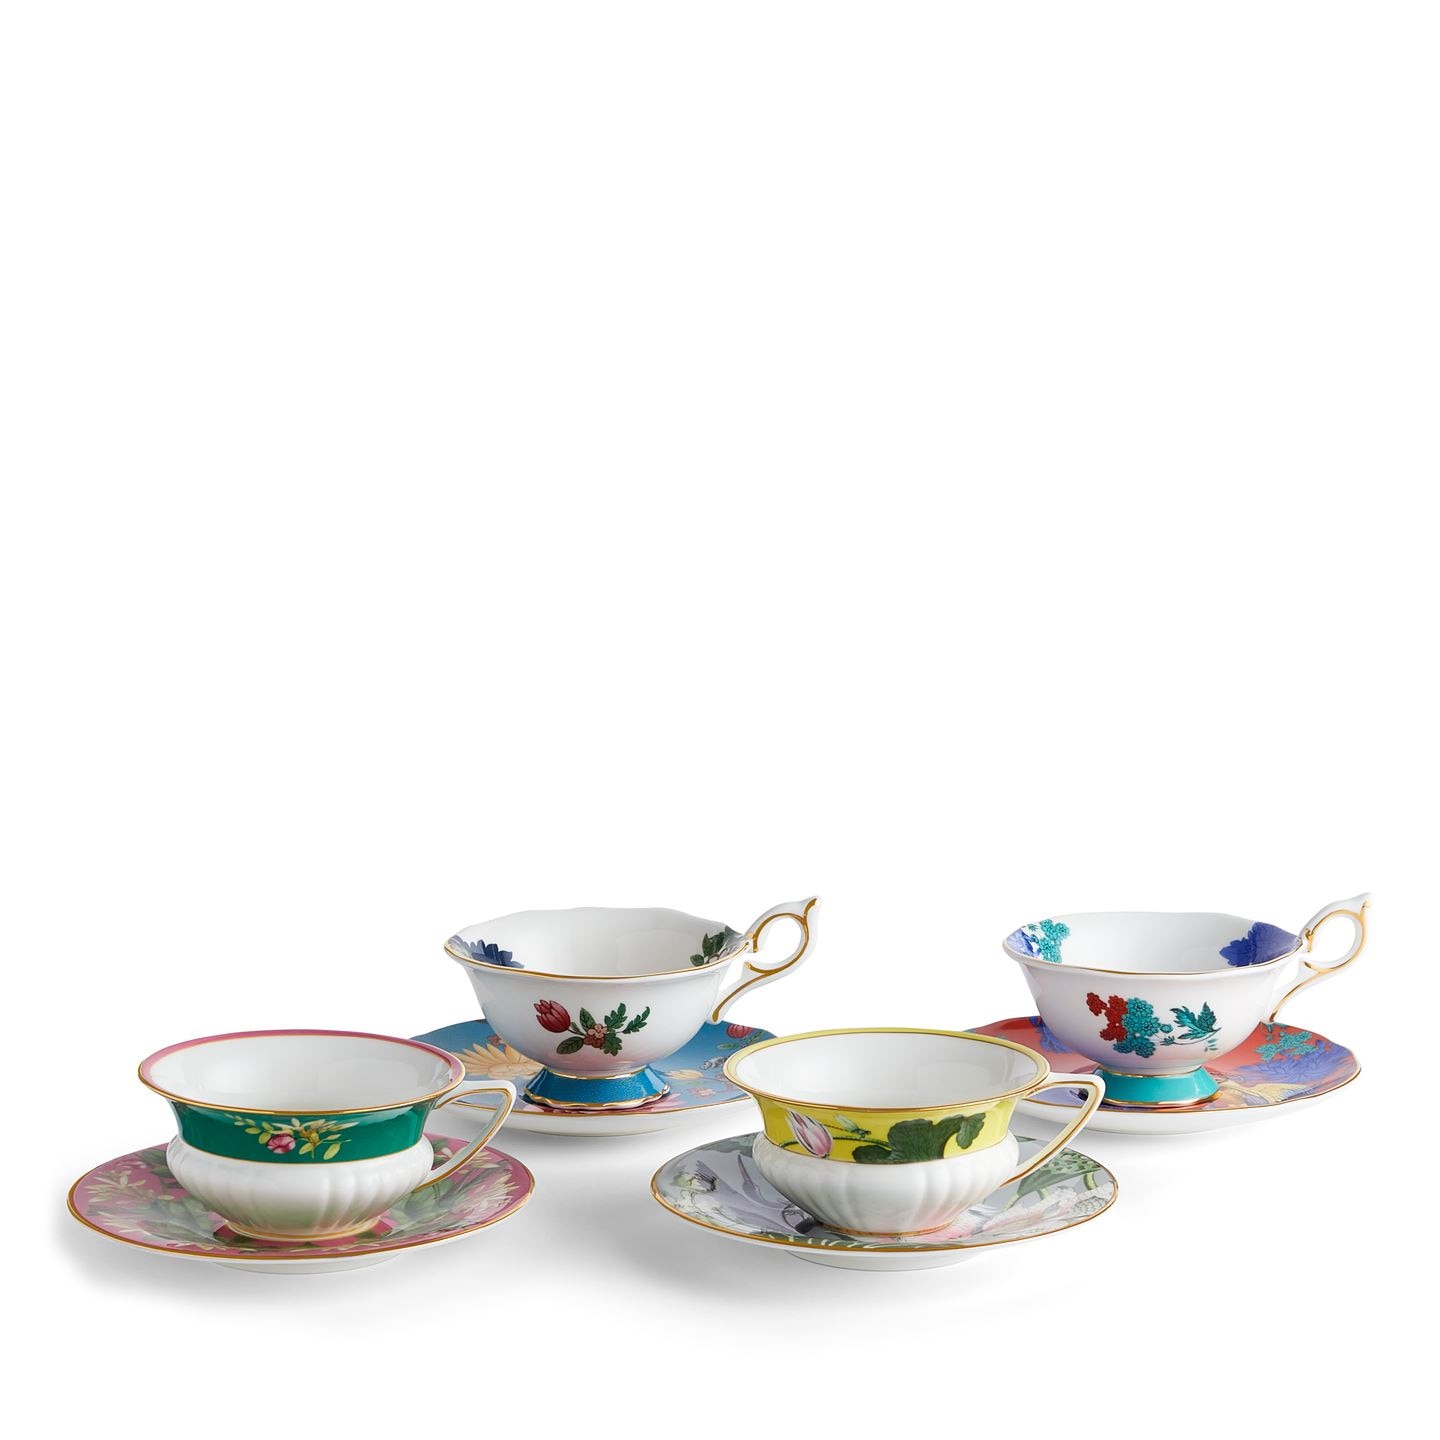 Wonderlust Teacups & Saucers, Set of 4